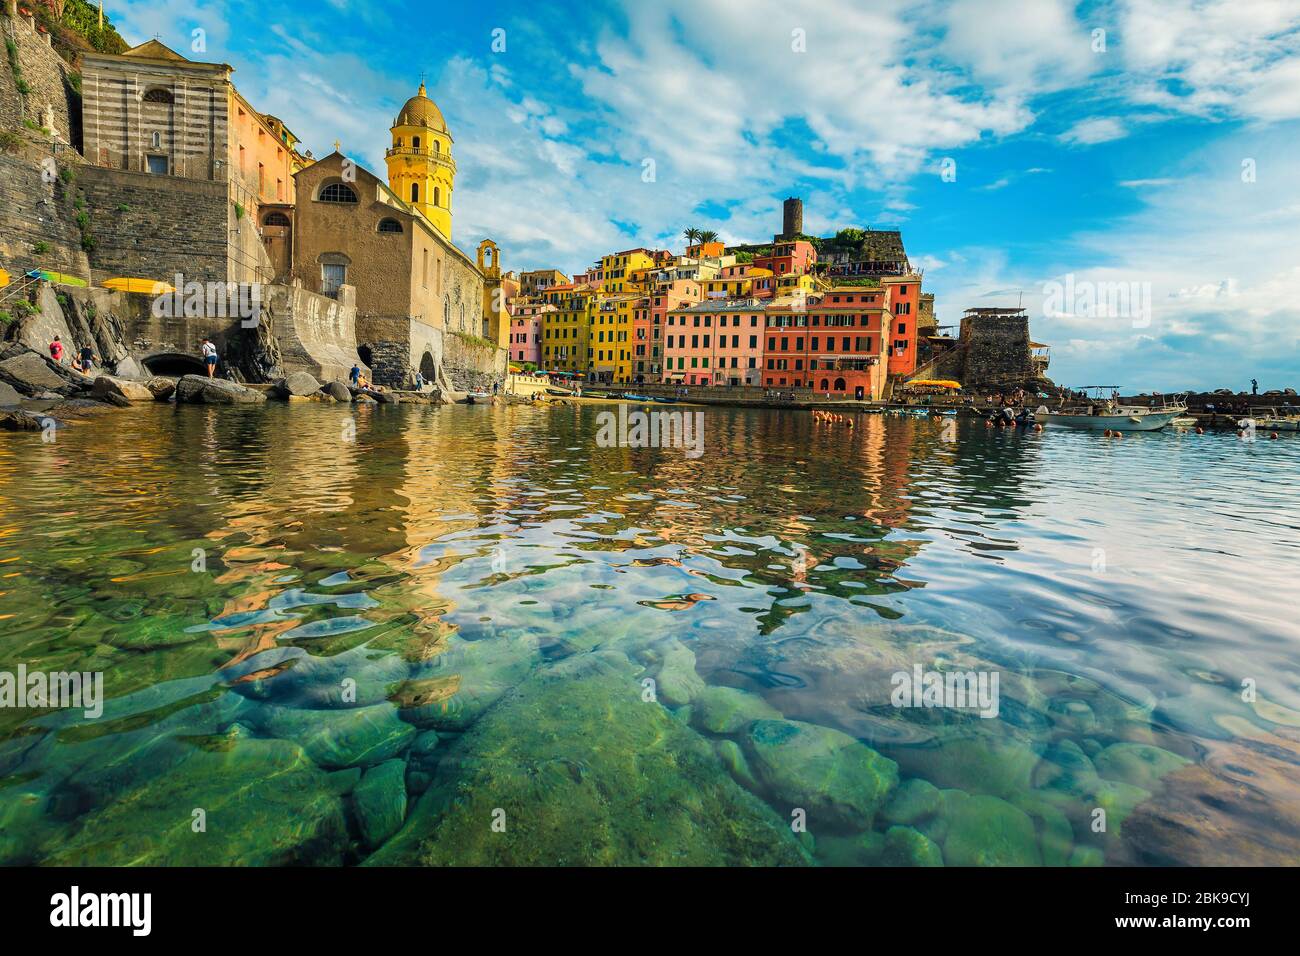 Magnifique station balnéaire méditerranéenne et emplacement touristique avec de vieux bâtiments colorés dans le port de Vernazza, Cinque Terre, Ligurie, Italie, Europe Banque D'Images